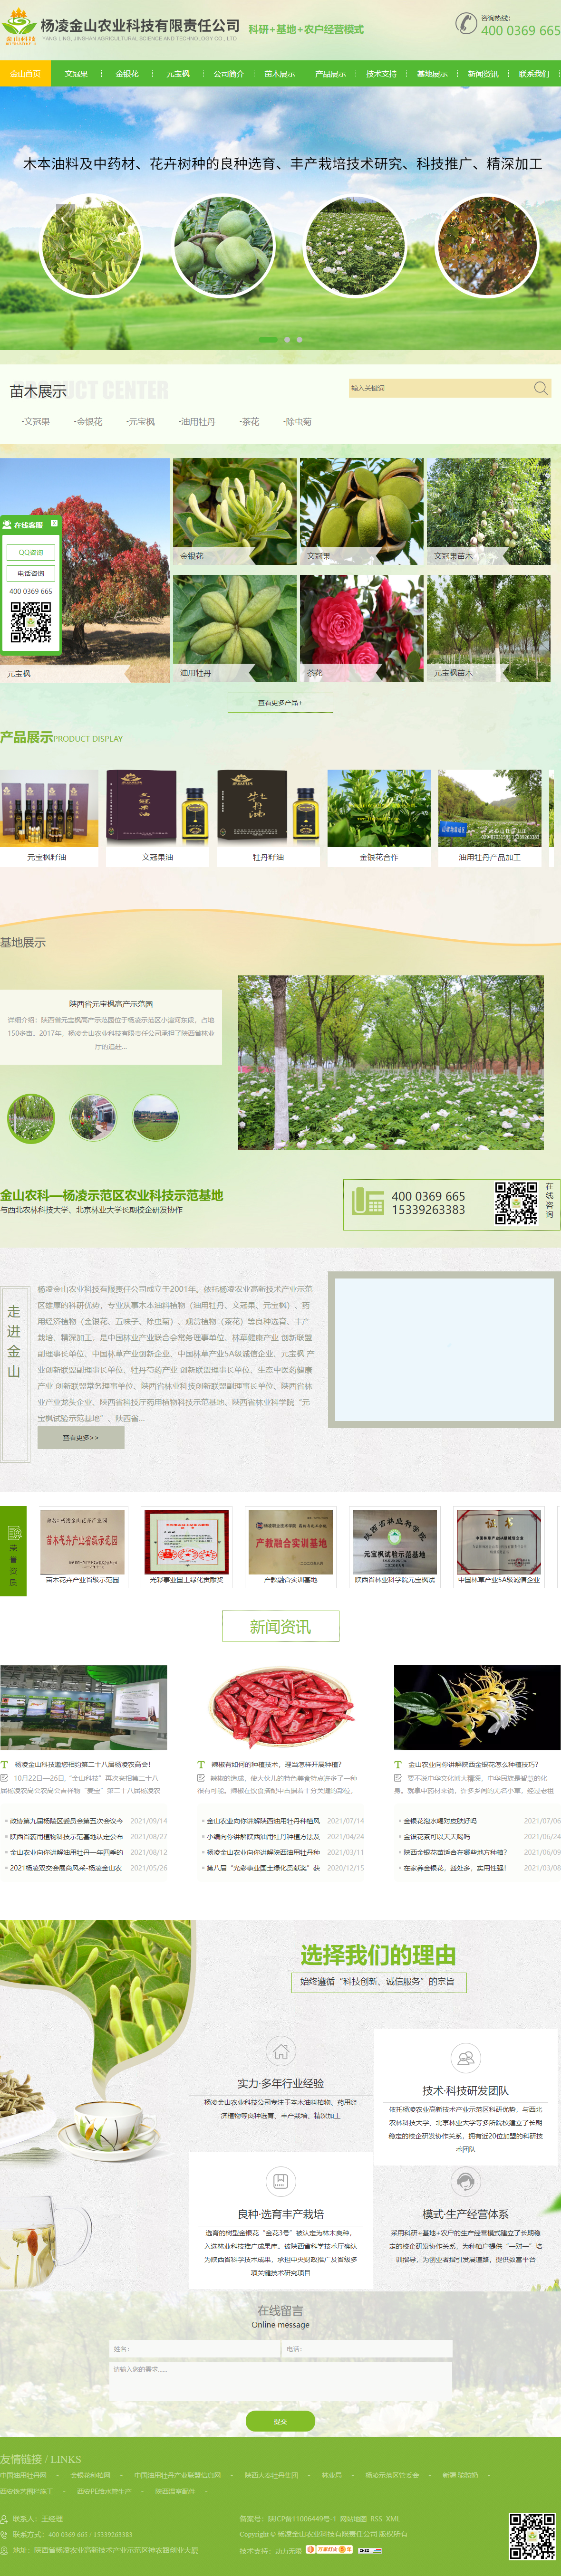 杨凌金山农业科技有限责任公司网站案例